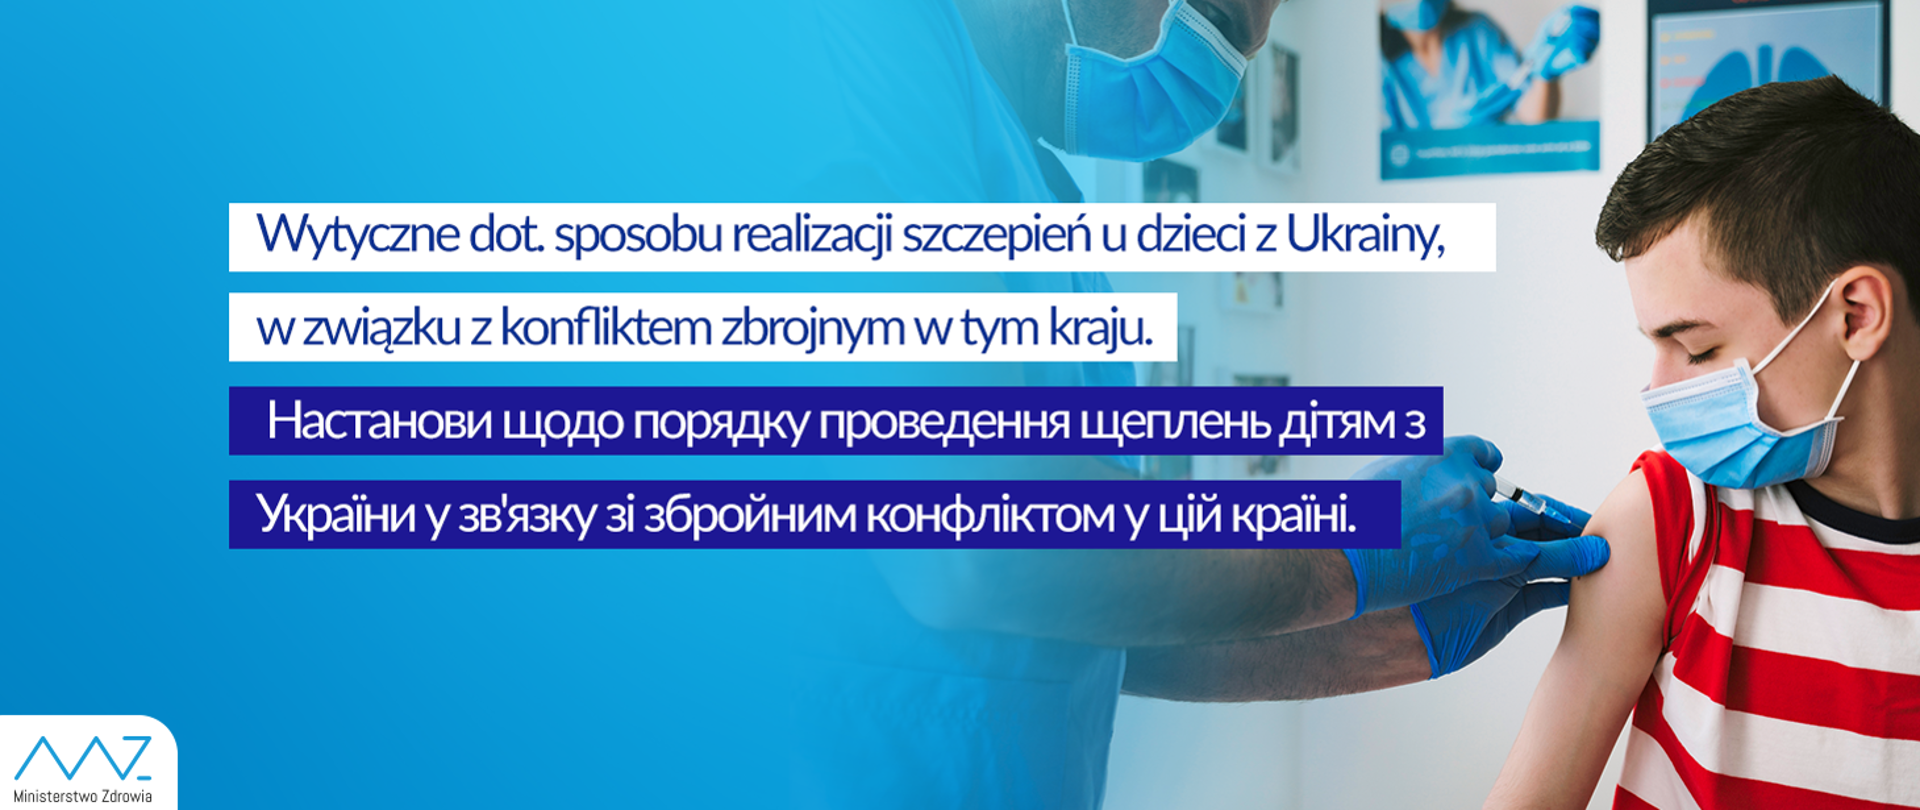 Wytyczne dot. sposobu realizacji szczepień dzieci z Ukrainy, w związku z konfliktem zbrojnym w tym kraju.